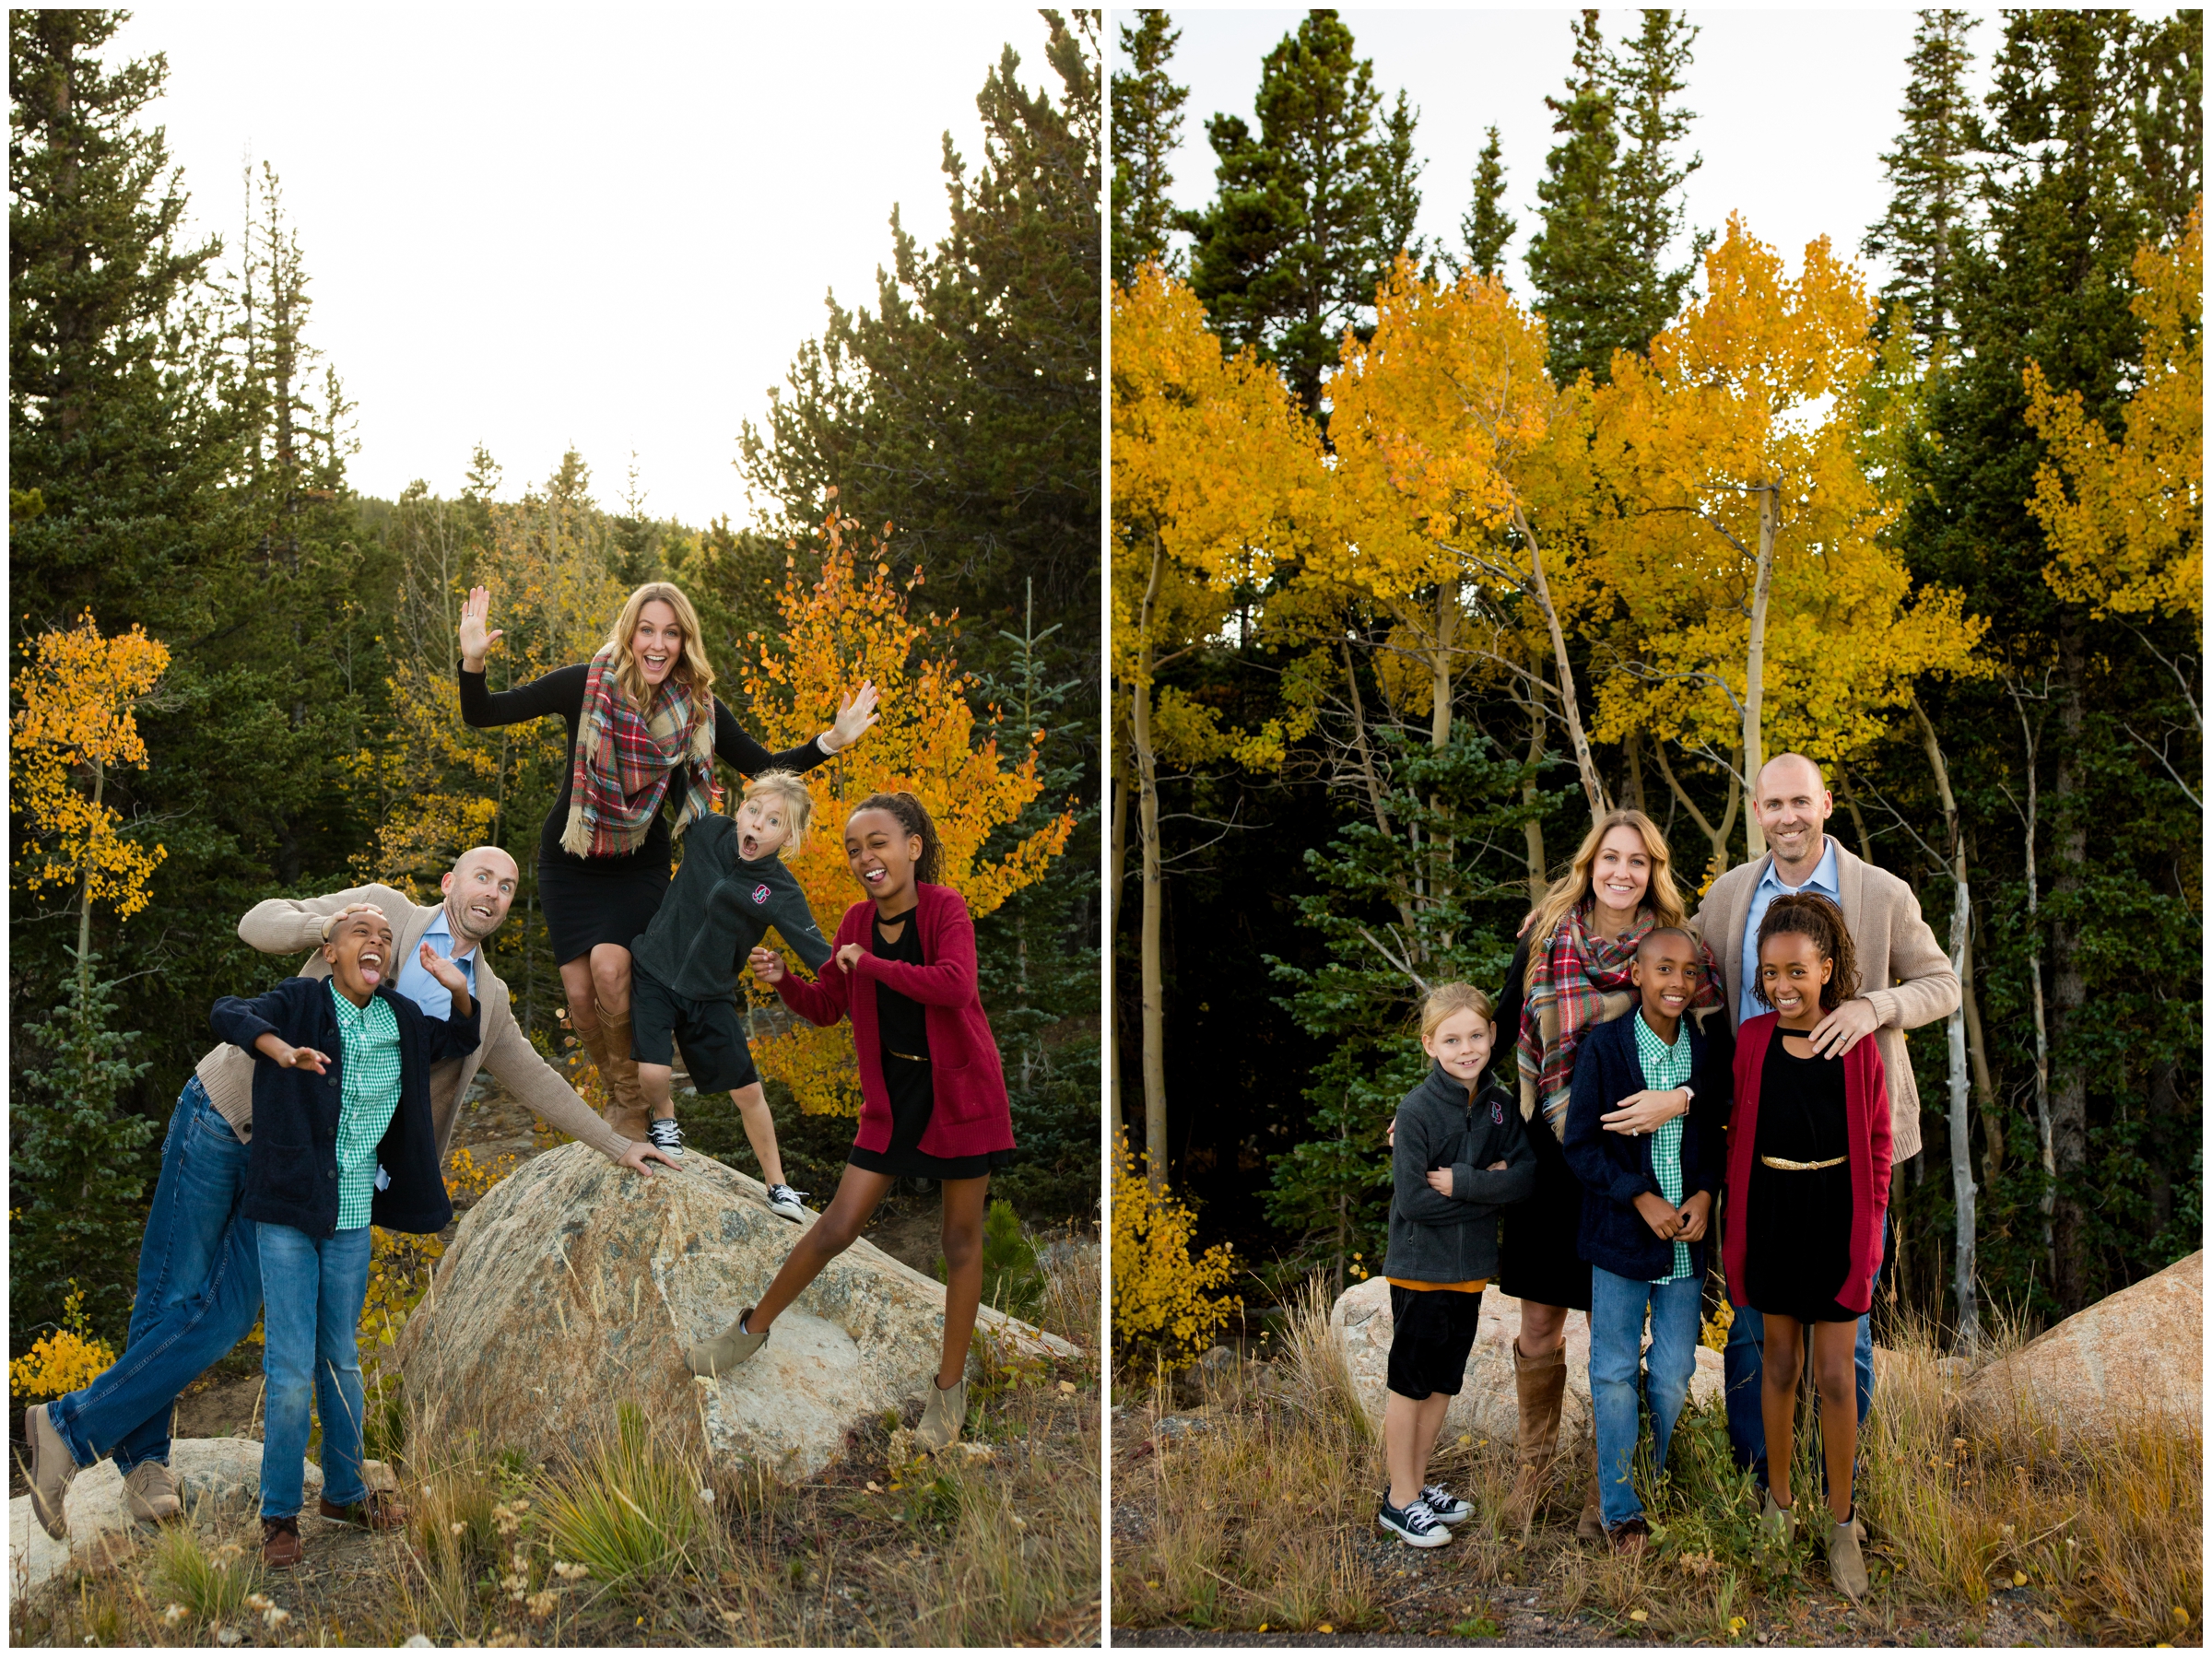 Colorado mountain family photos at Brainard Lake by Estes Park photographer Plum Pretty Photography